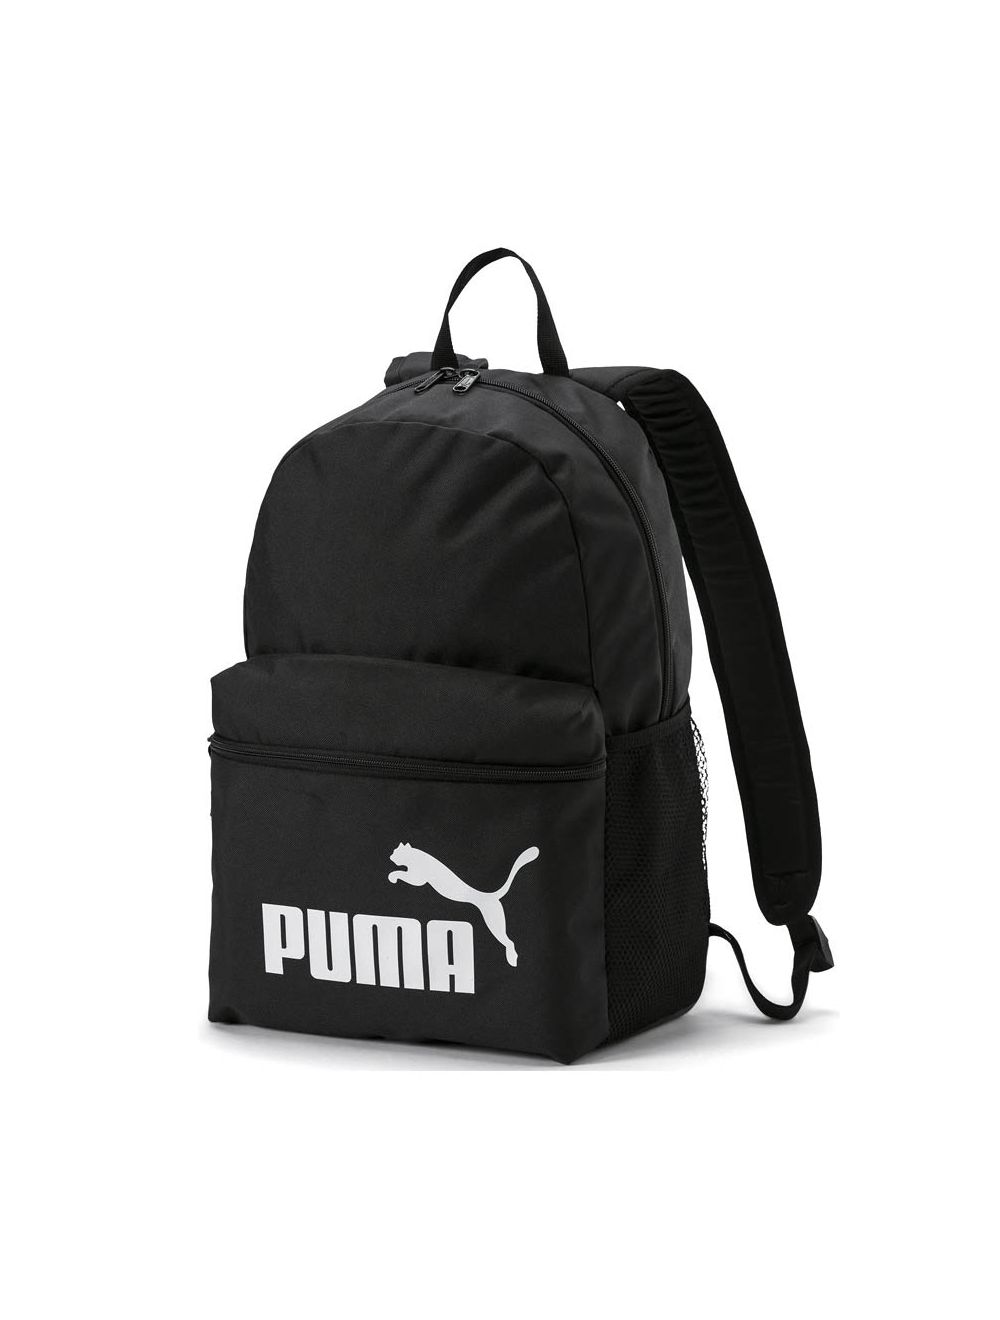 Puma Handbags - Buy Puma Handbags Online in India | Myntra